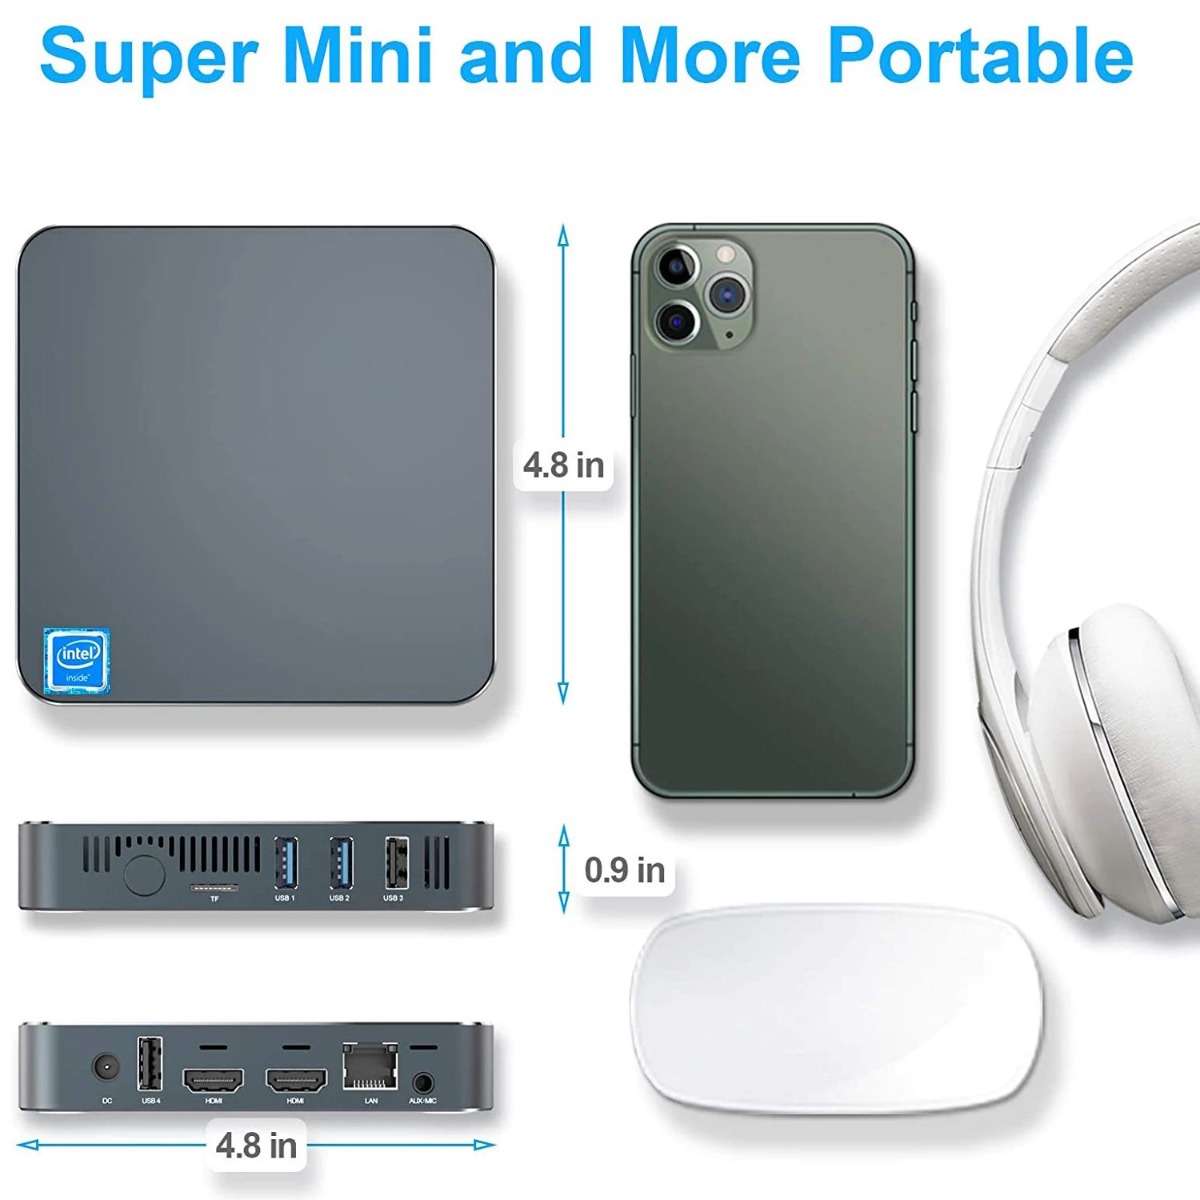 Ultra Mini PC GK7 | Super Mini and More Portable